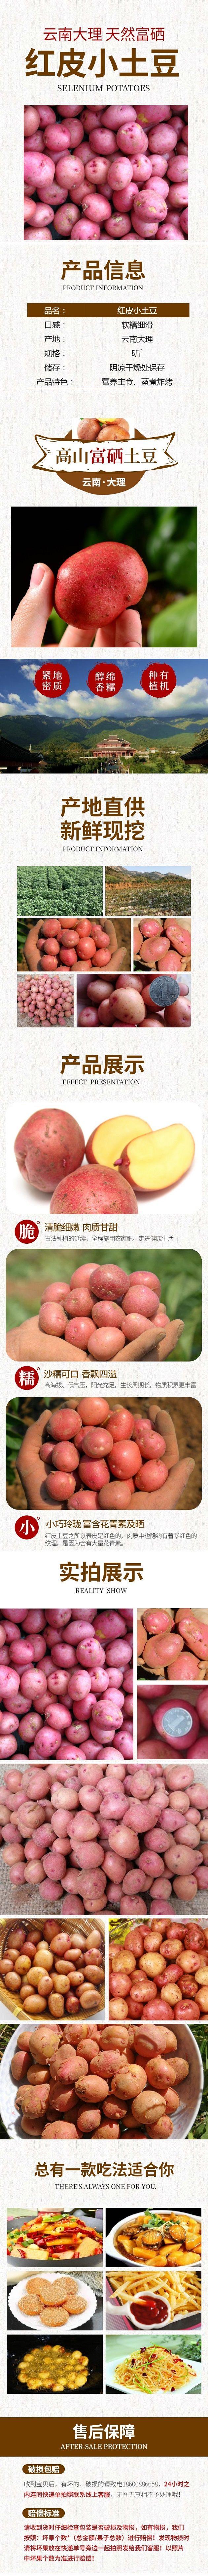 食品生鲜蔬菜土豆详情页630_眸目压缩.jpg